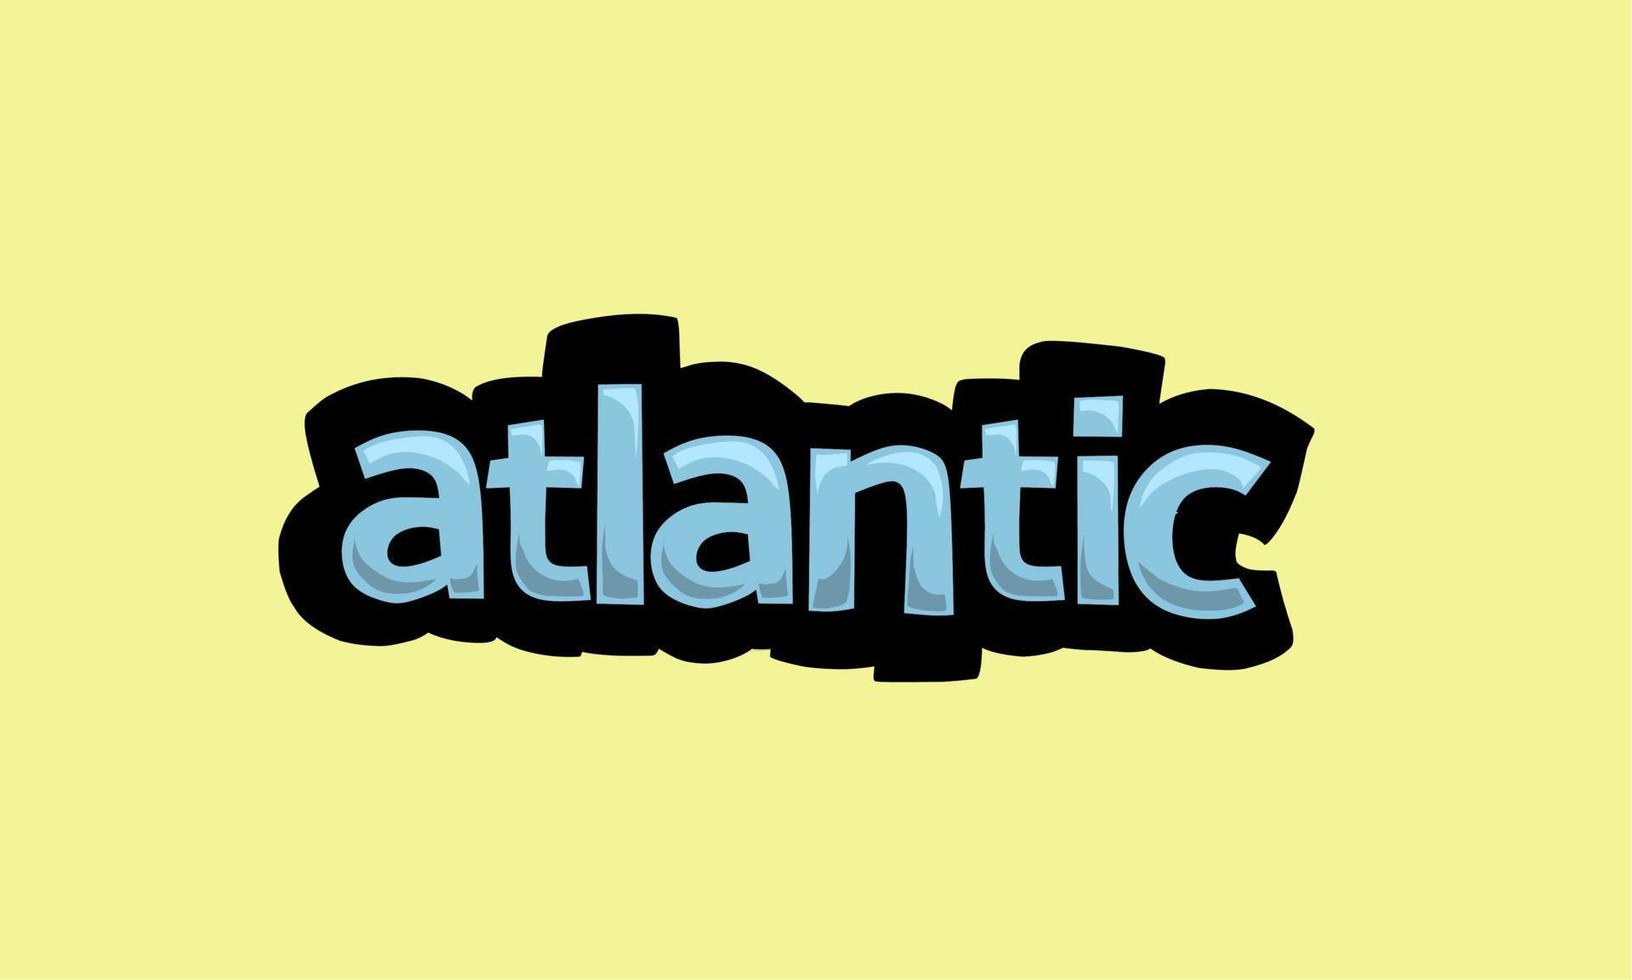 conception de vecteur d'écriture atlantique sur fond jaune